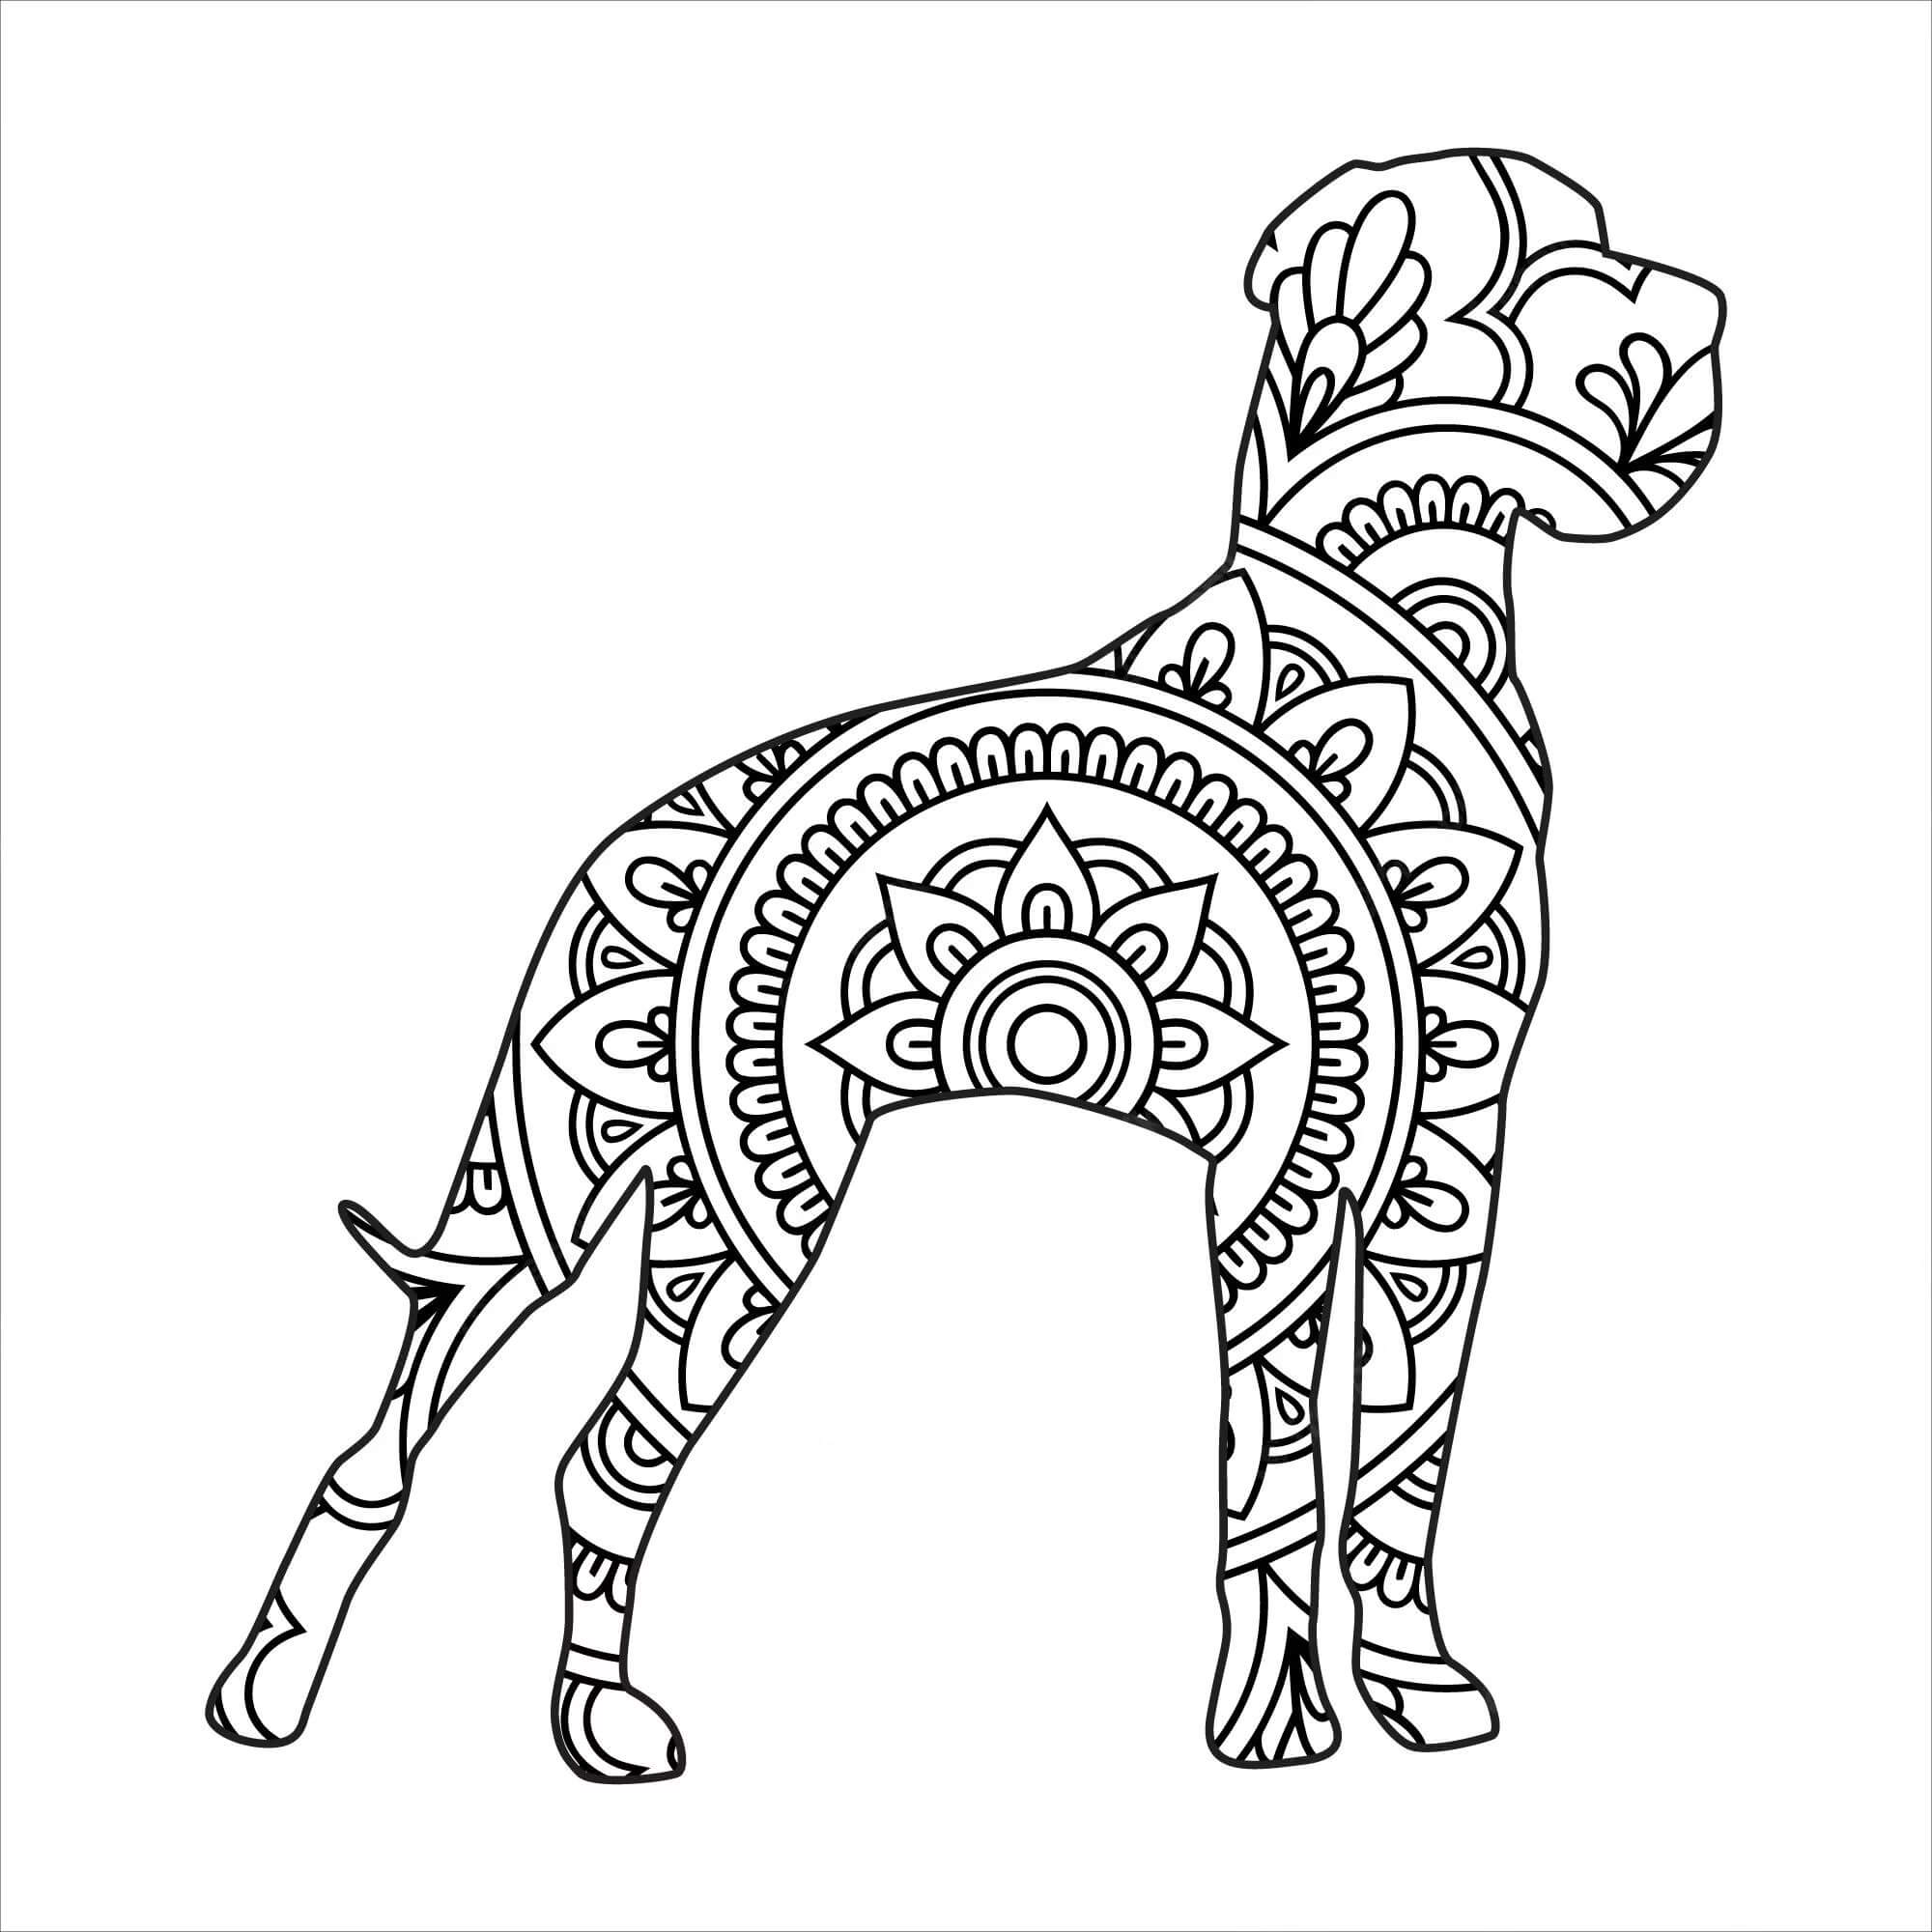 Mandala Dog Coloring Page - Sheet 5 Mandalas